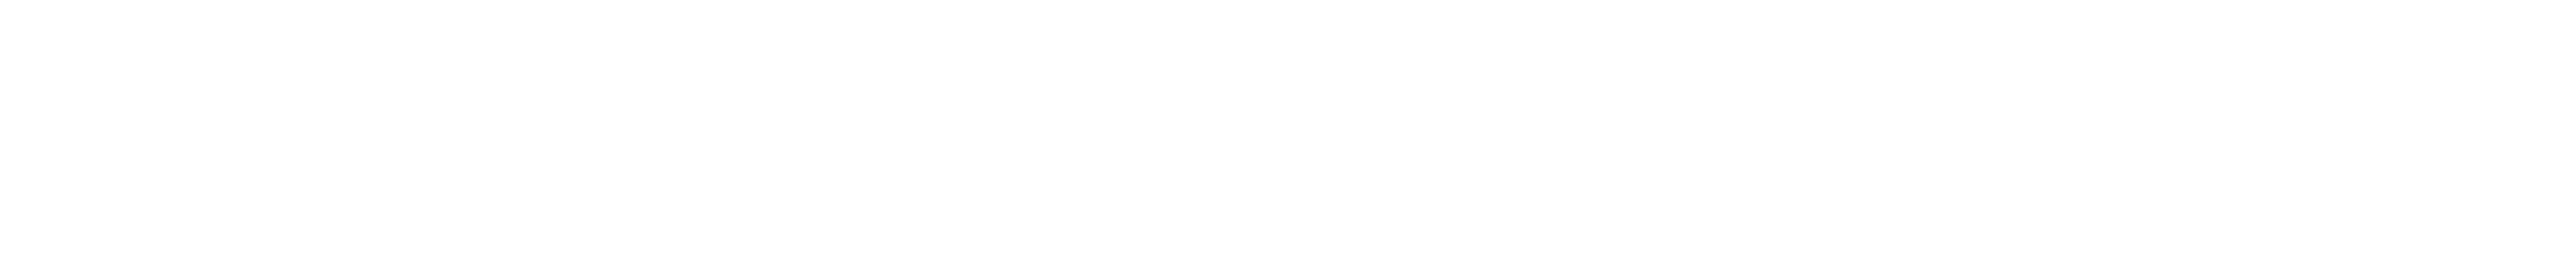 WHO EMRO logo